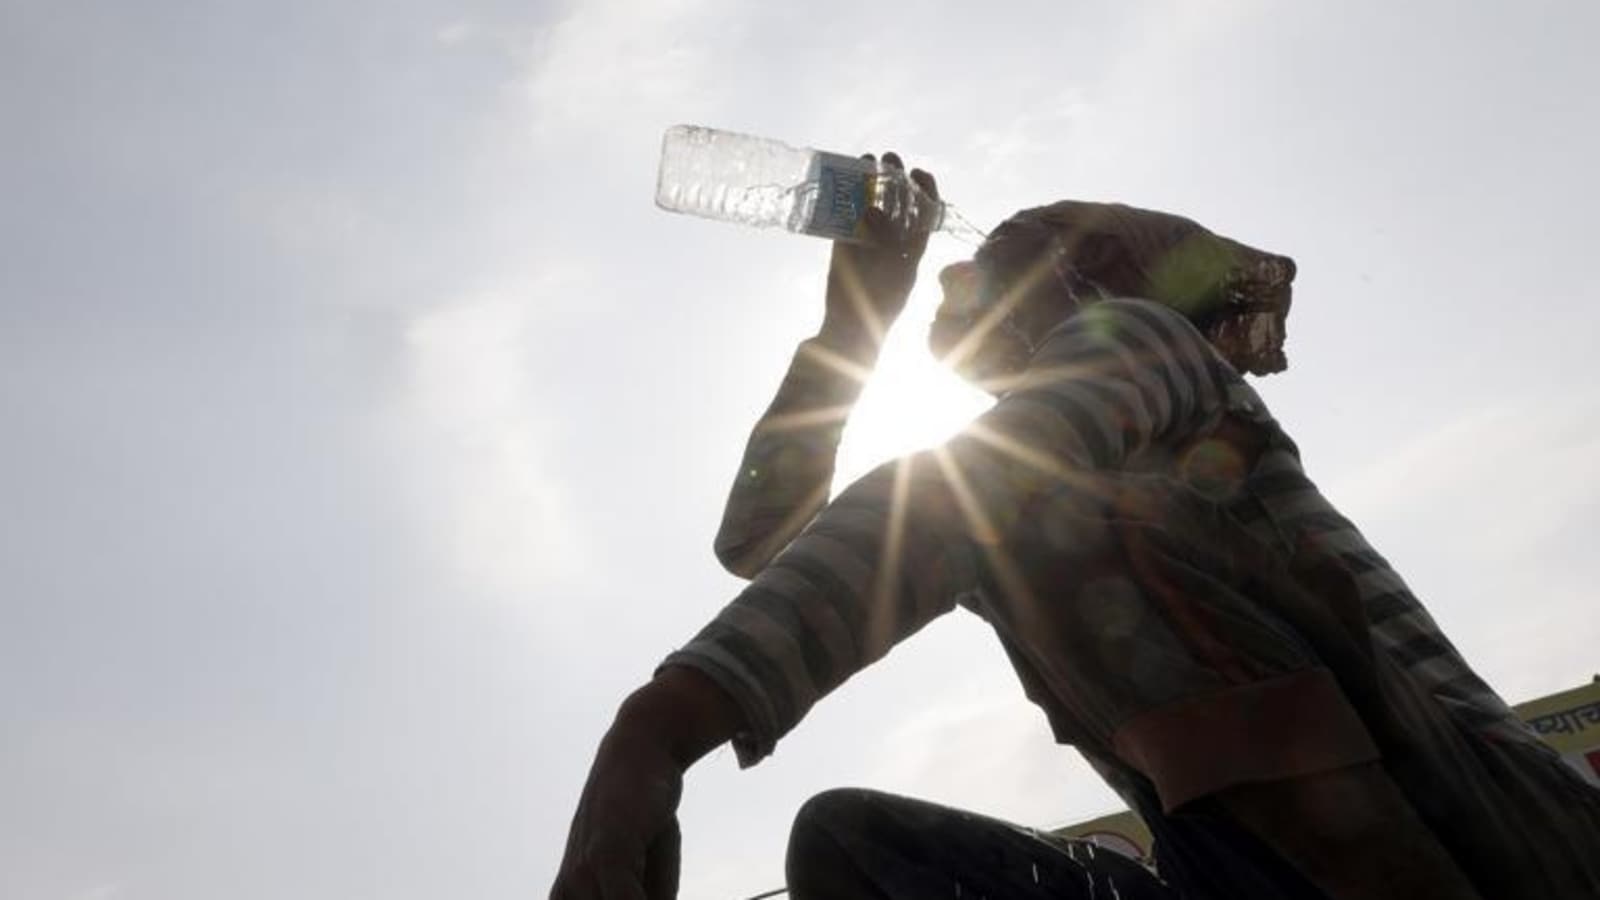 Heatwave to return next week in Delhi | Latest News Delhi - Hindustan Times